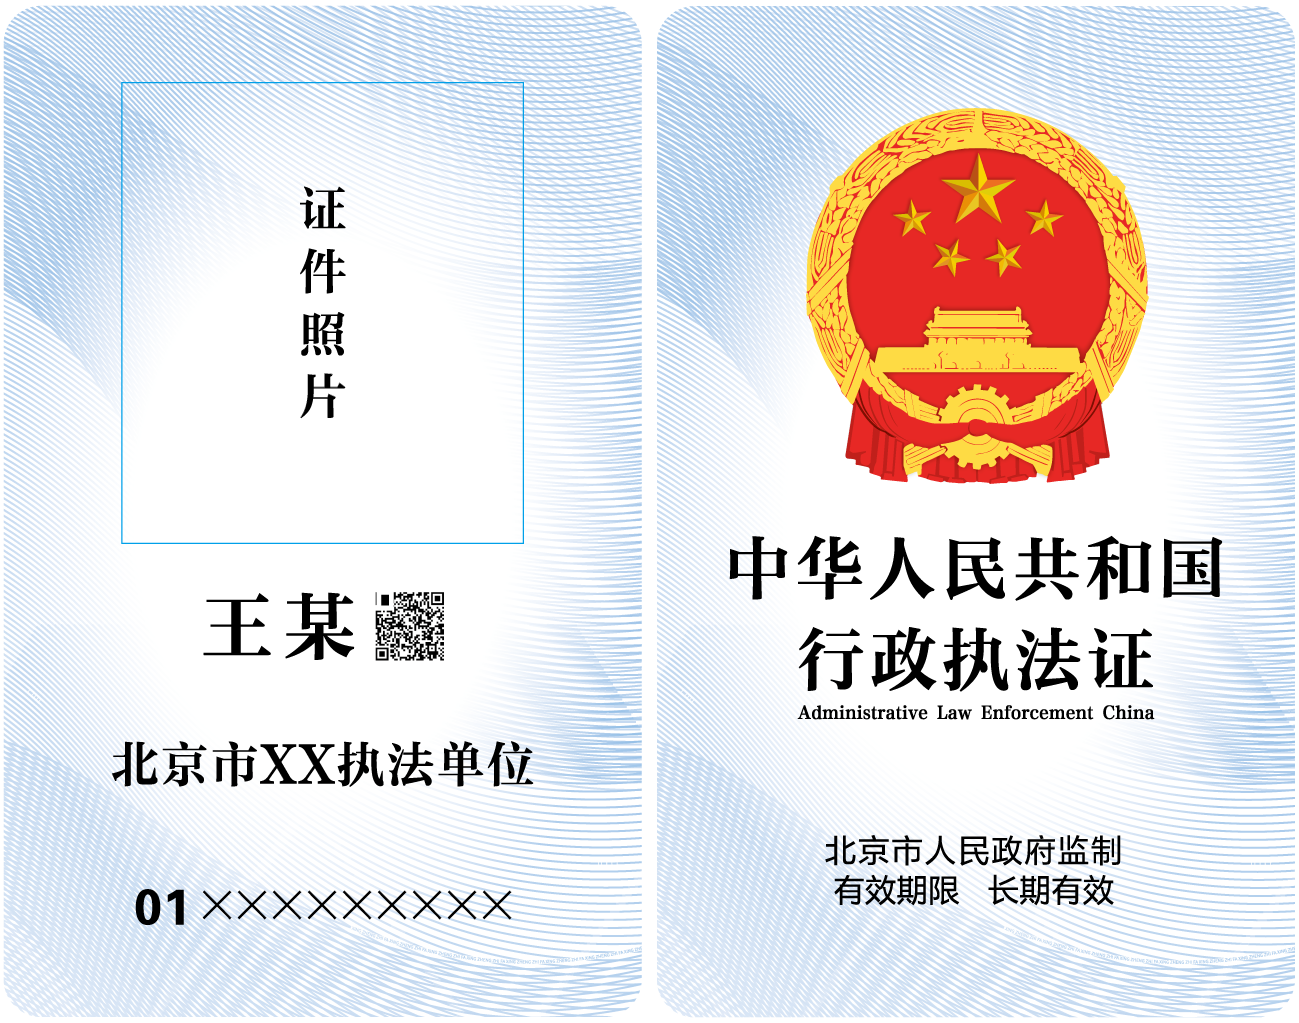 新版行政执法证件标识卡样式（适用于市级行政执法部门）.png